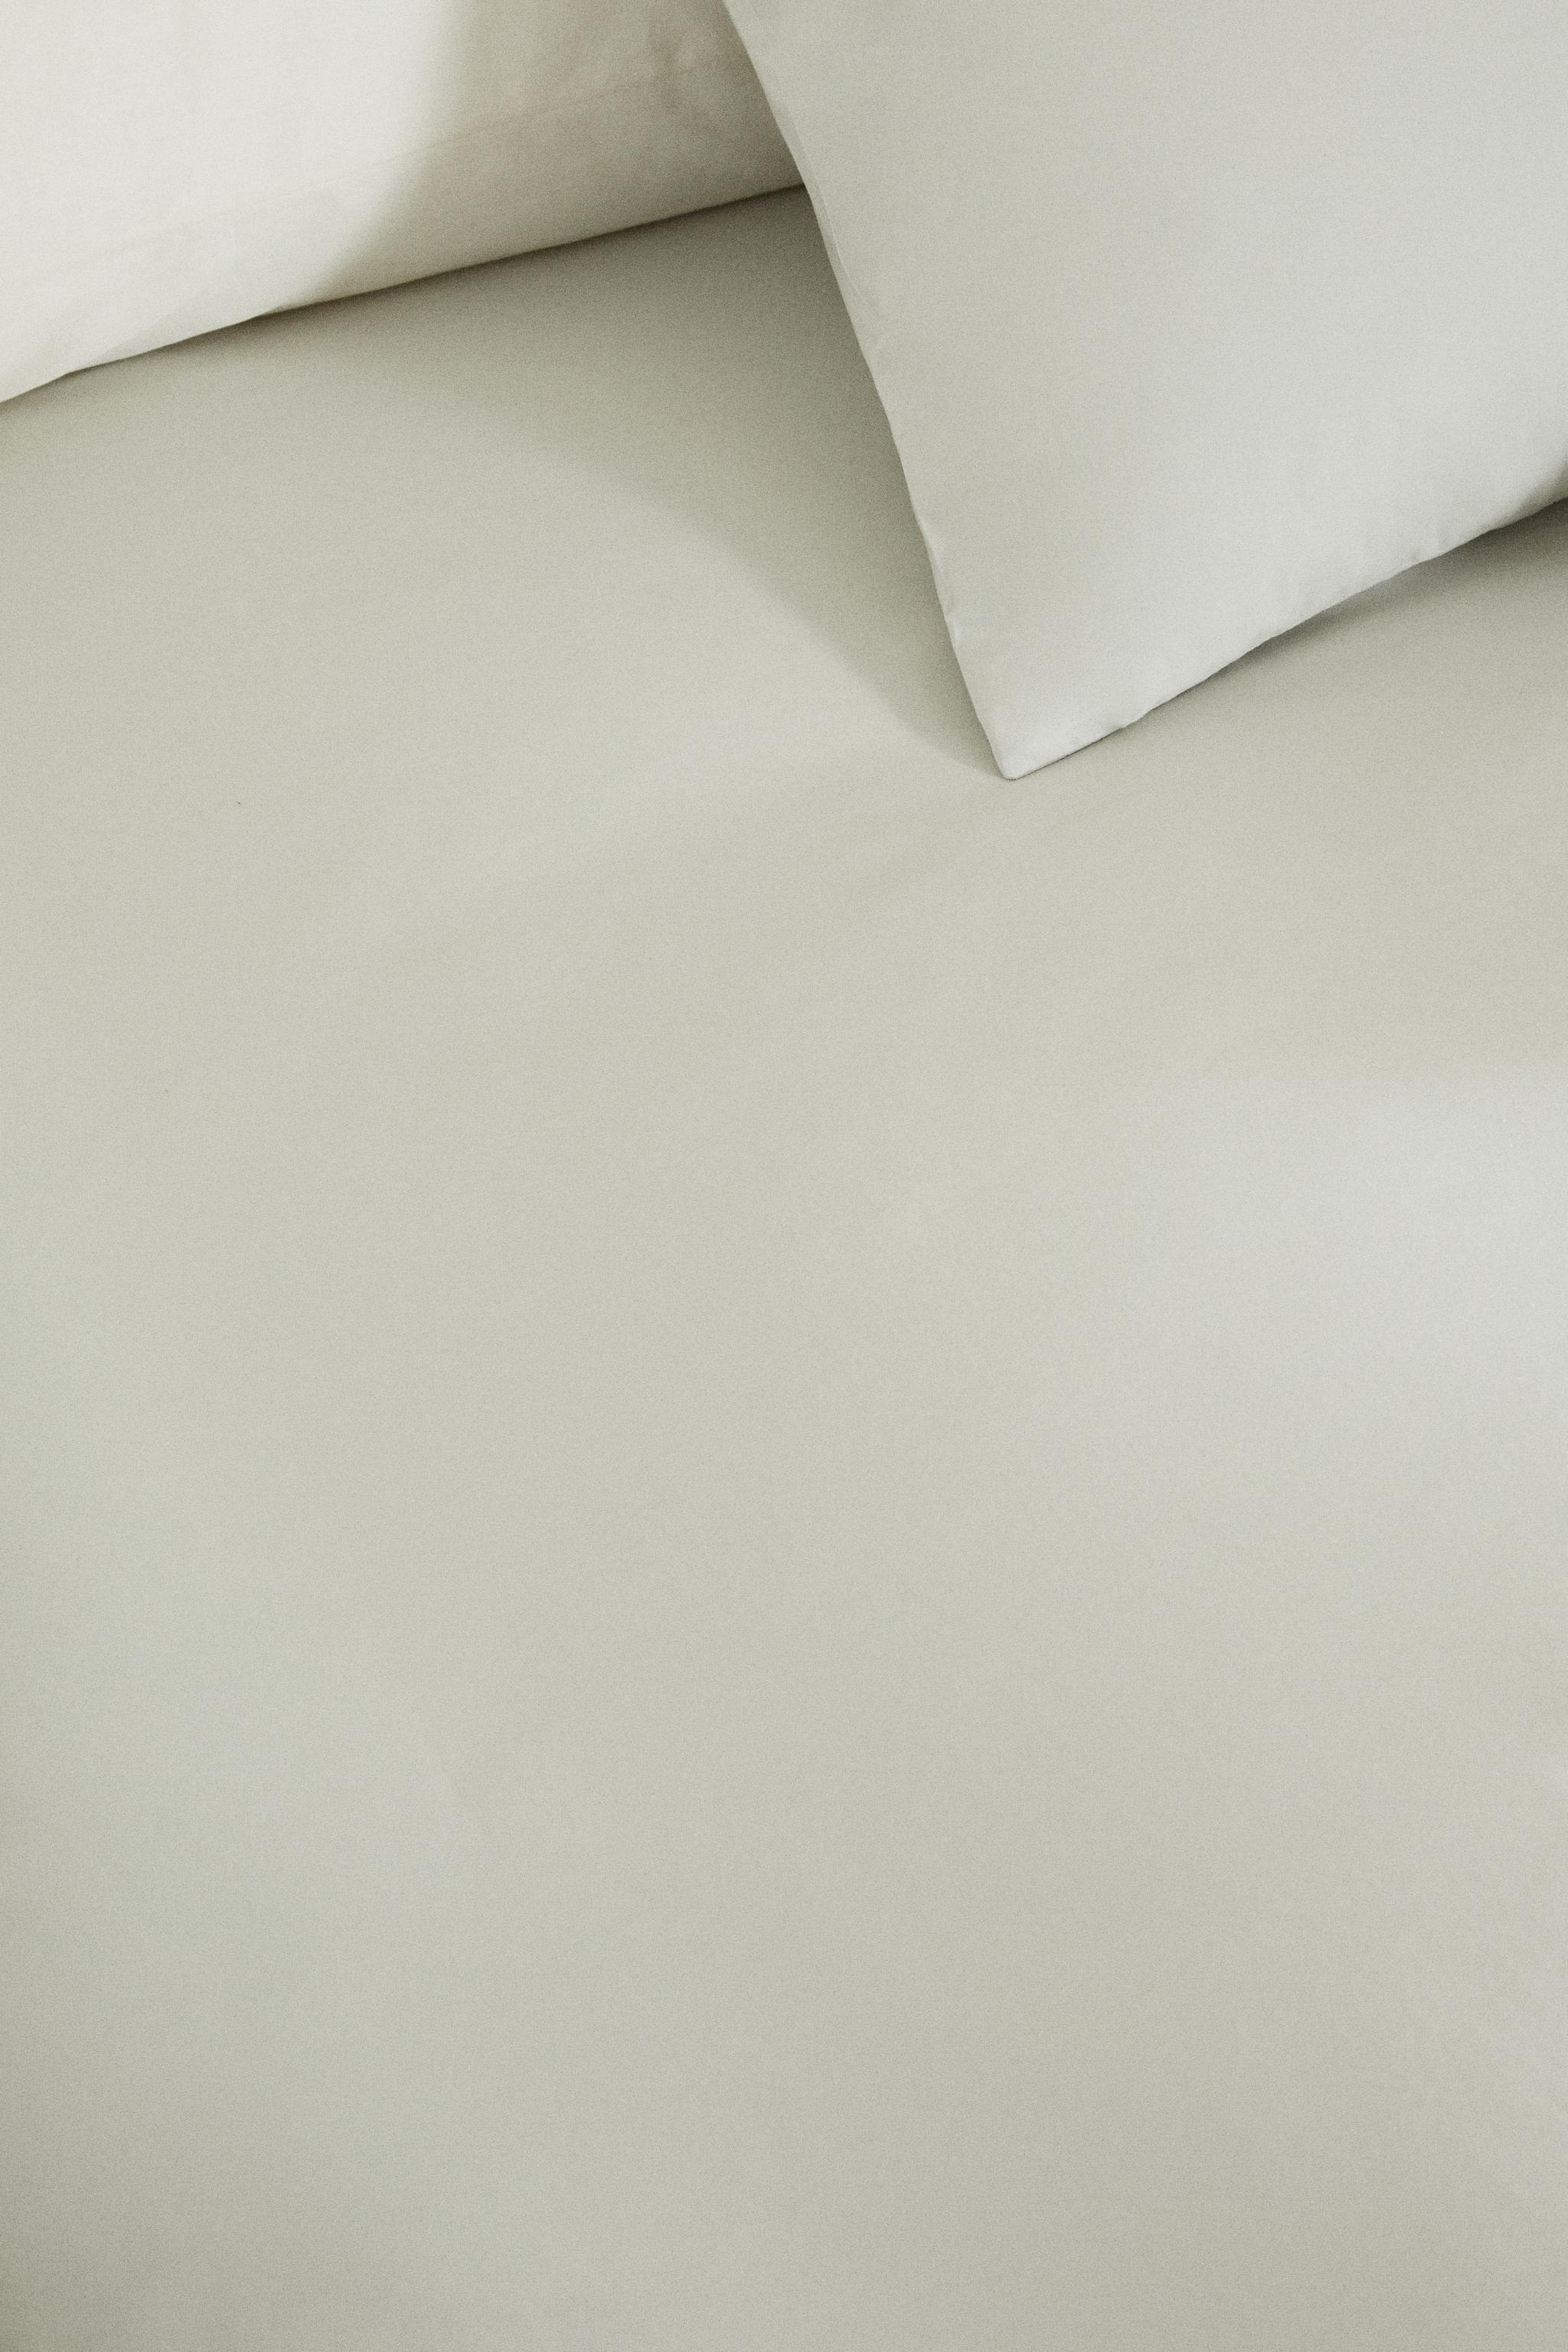 Funda nórdica Haku Amarillo cama 120 cm - 200x200 cm, algodón 200 hilos.  Cierre con corchetes.